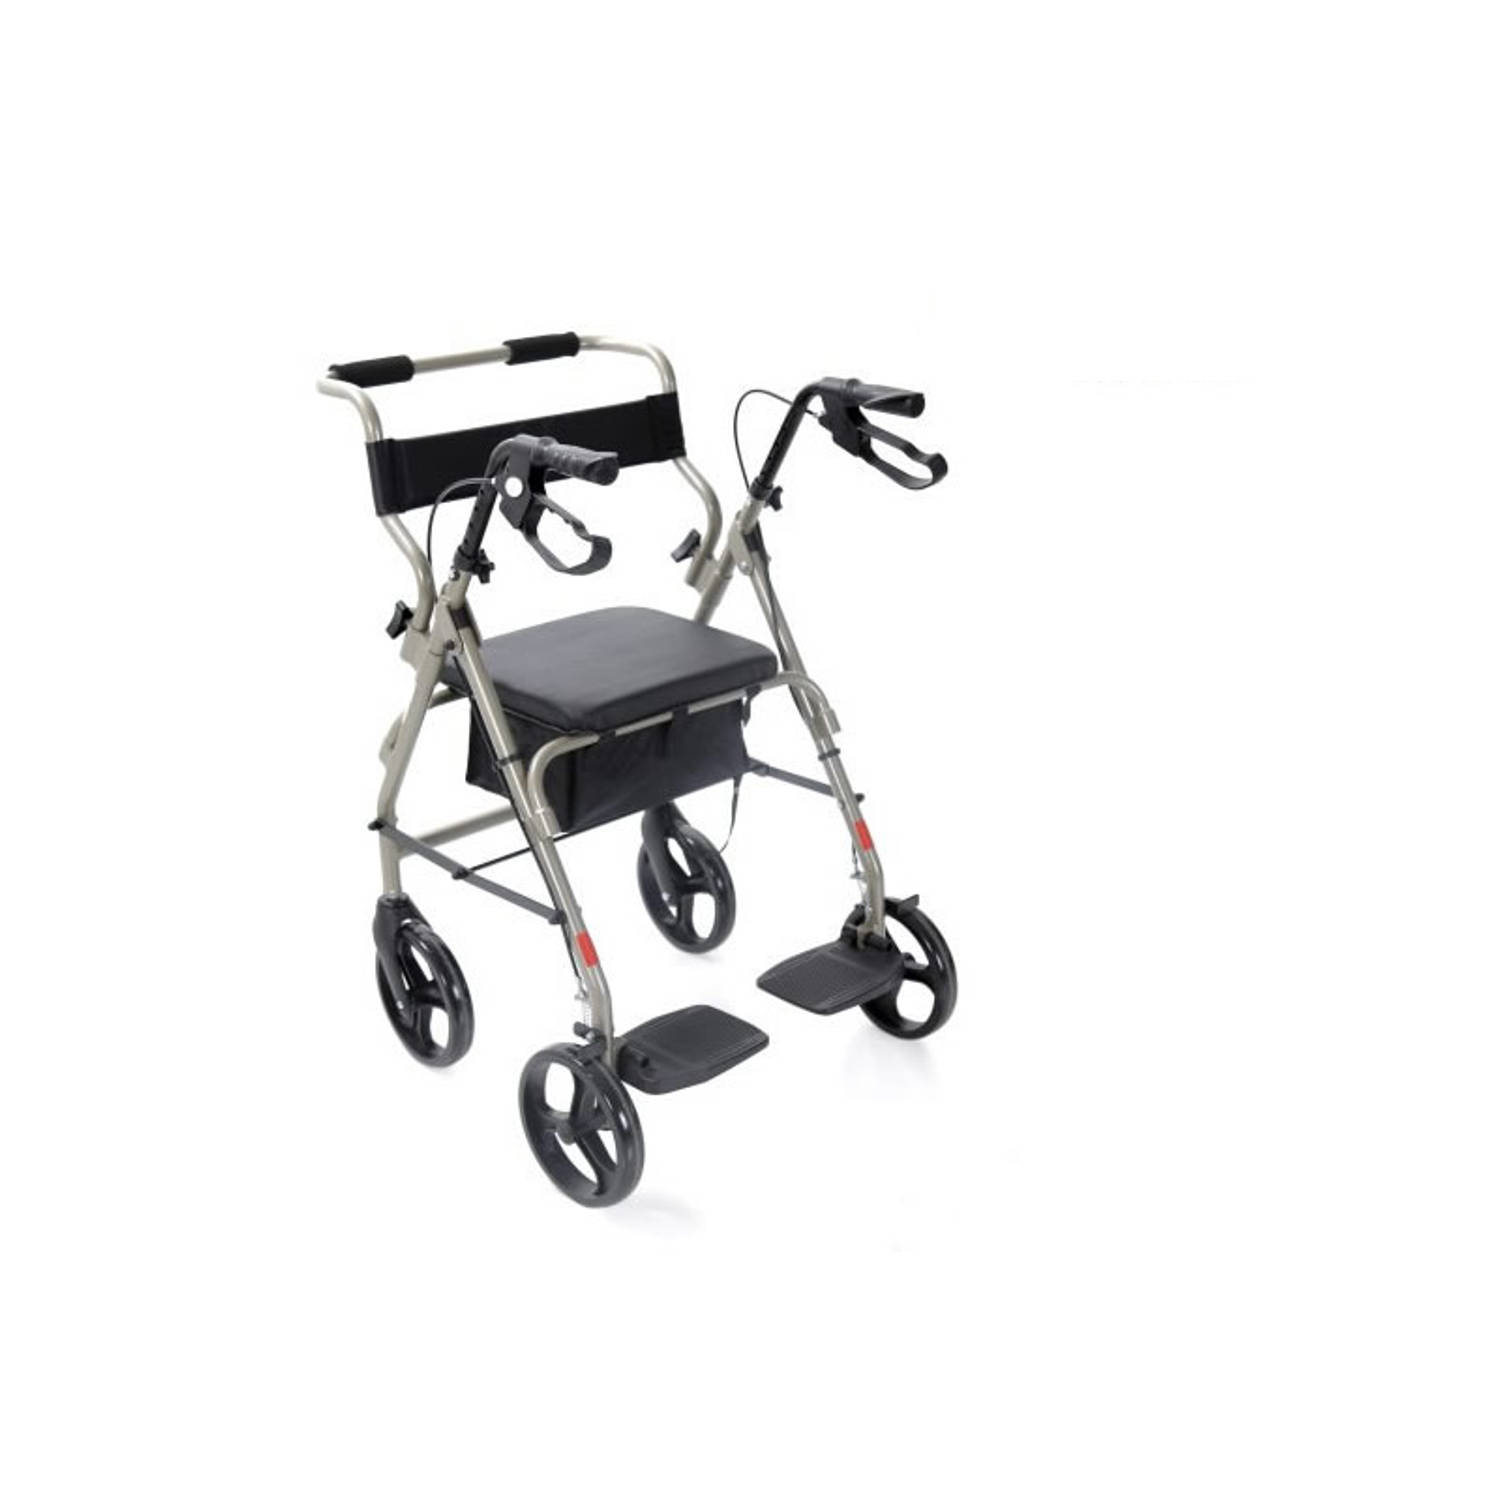 Moretti rolstoel / rollator met 4 wielen, zitting en een voetensteun.